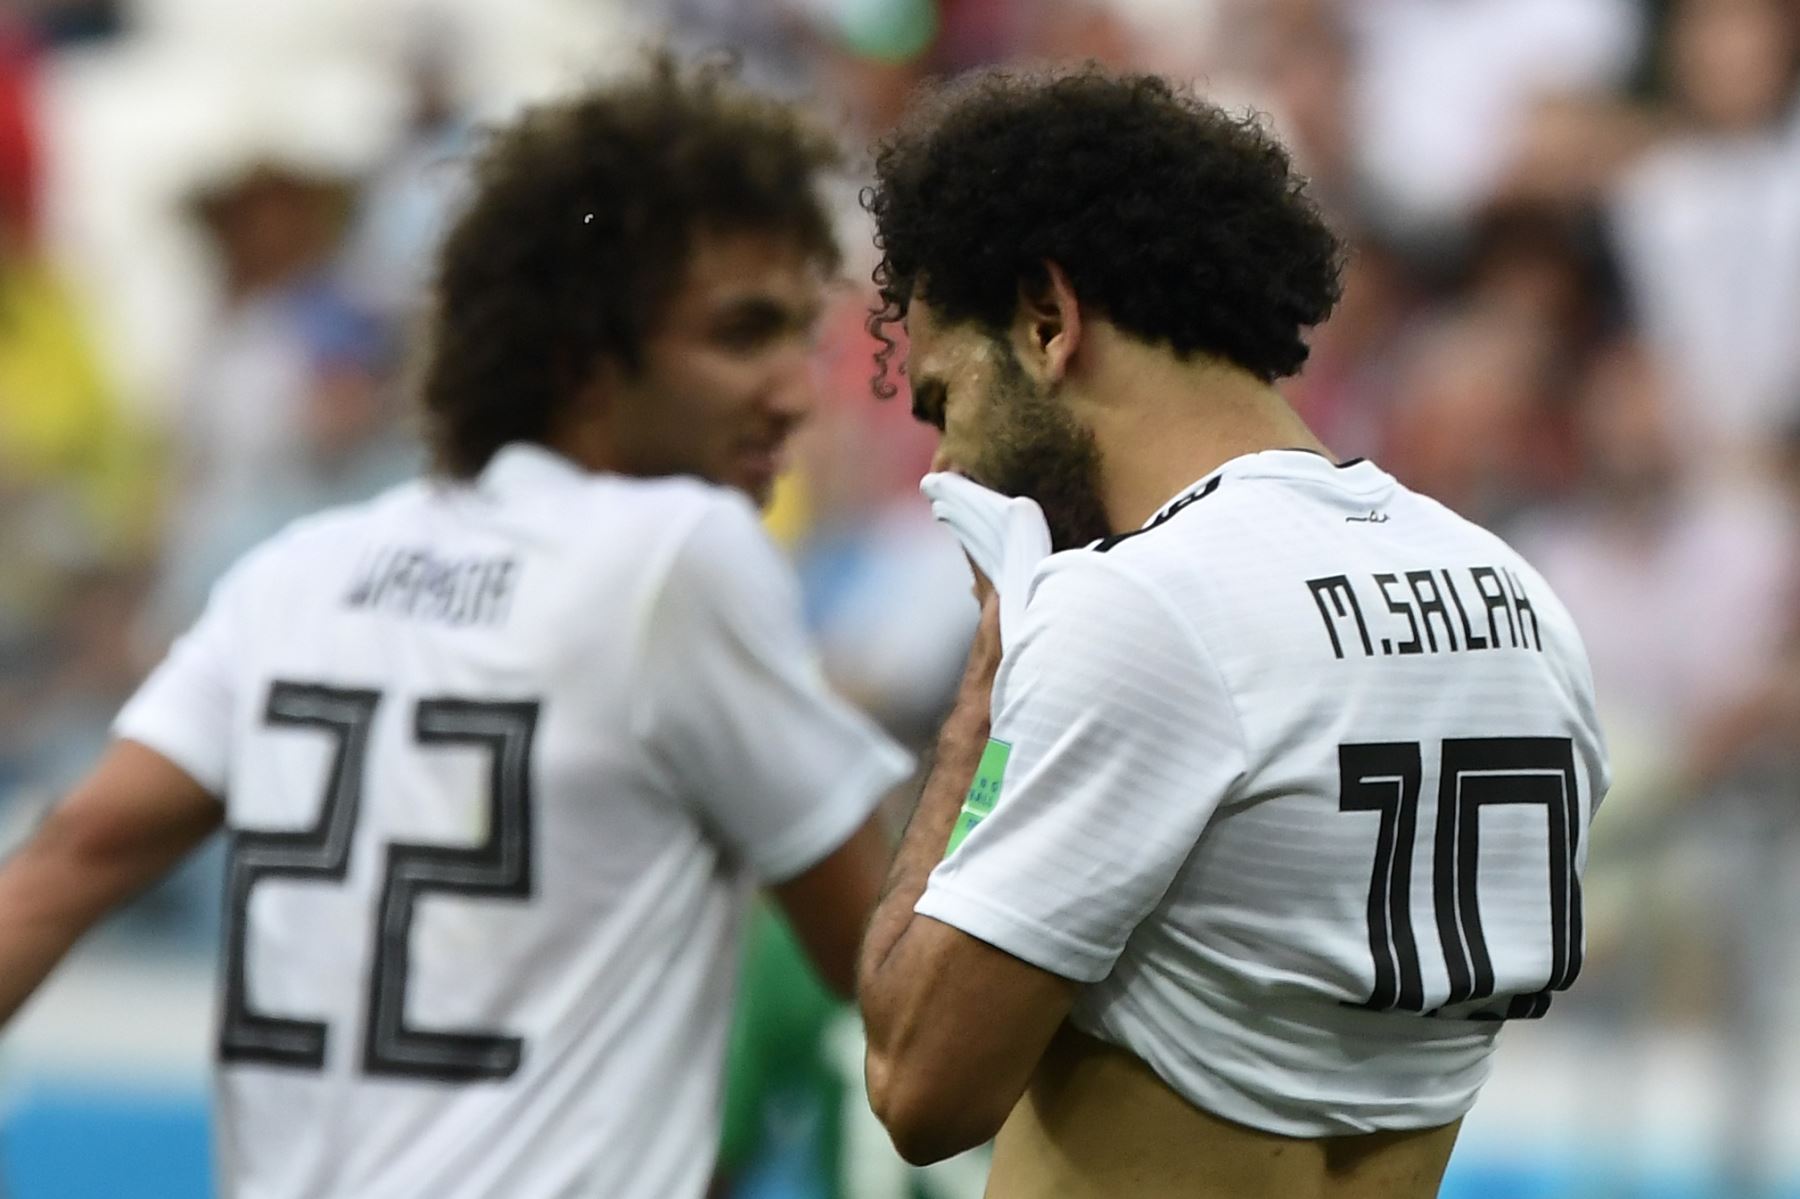 El delantero egipcio Mohamed Salah (R) se limpia la cara durante el partido de fútbol de la Copa Mundial Rusia 2018 entre Arabia Saudita y Egipto en el Volgograd Arena de Volgogrado el 25 de junio de 2018. / AFP